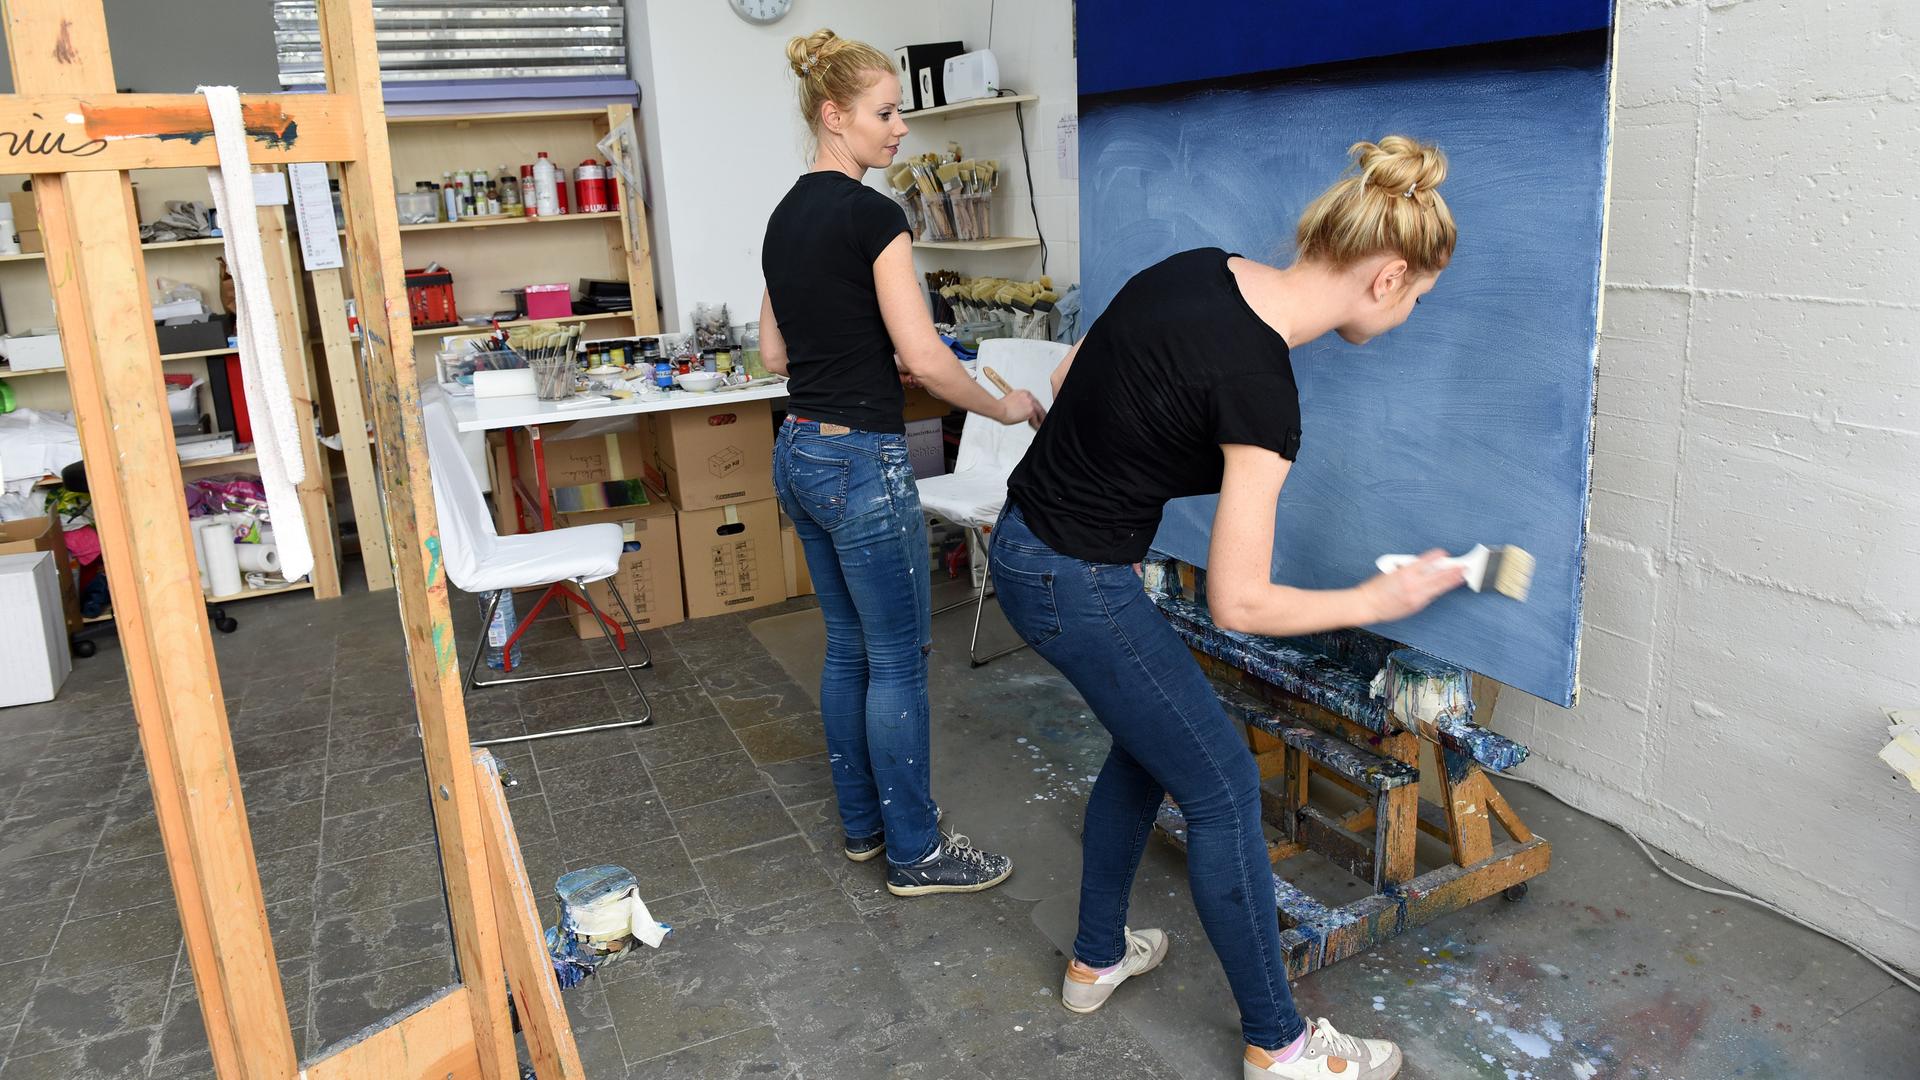 Zwei blonde Frauen in Jeans und schwarzem T-Shirt, Irina (l.) und Marina Fabrizius, malen gemeinsam an einem Bild in Düsseldorf. Das Bild ist in verschiedenen Blautönen gehalten. Links im Vordergrund ist eine Staffelei im Bild.